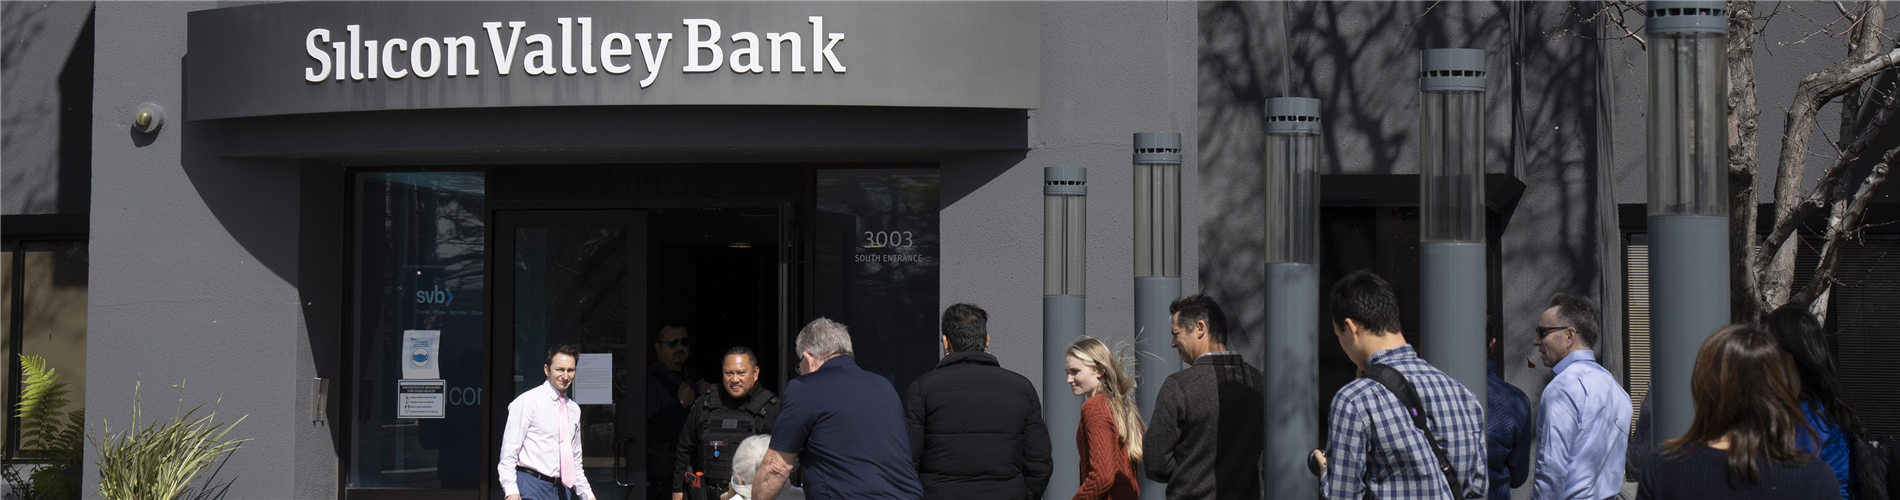 美联储称美银行存款一周流失近千亿美元